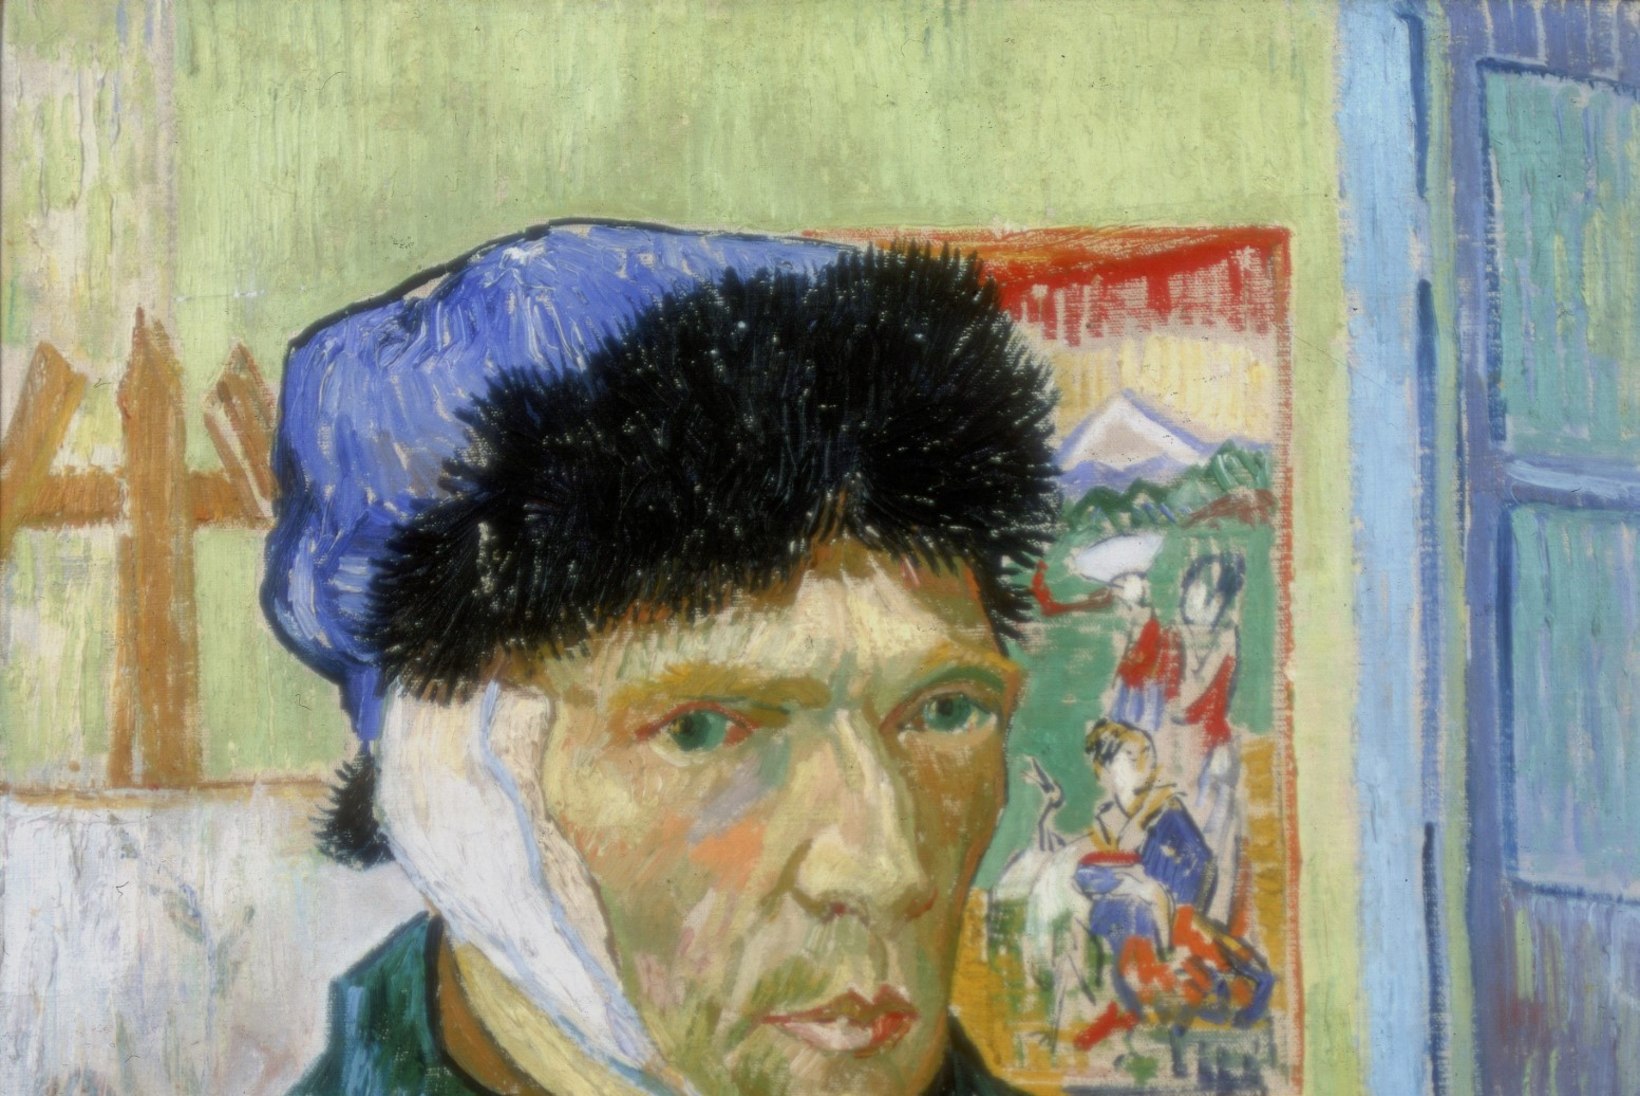 Van Gogh lõikas endalt kõrva, kui kuulis venna naitumisest?